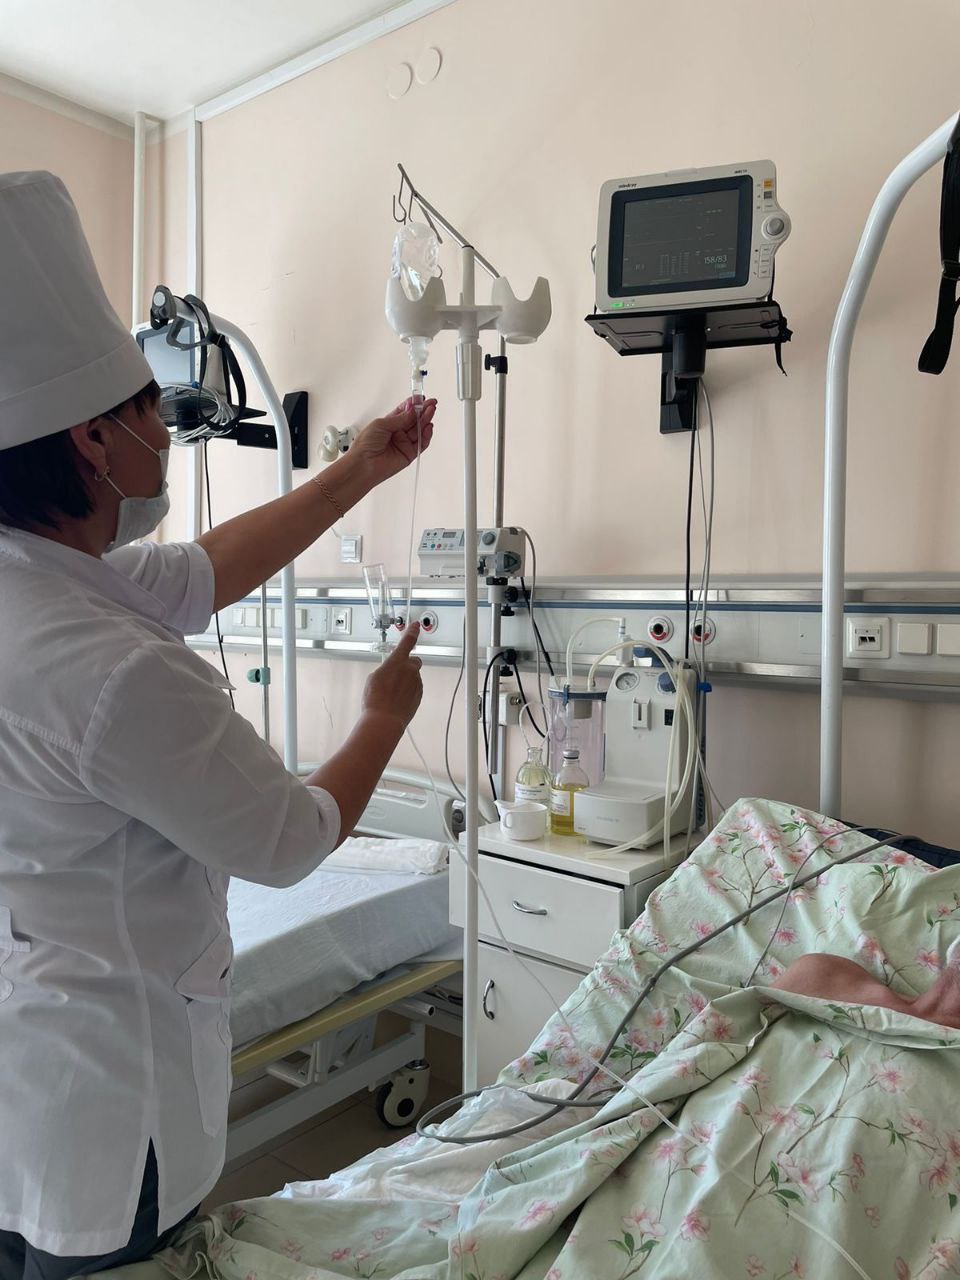 Российским медикам хотят запретить оценивать врачебные ошибки #Новости #Общество #Омск